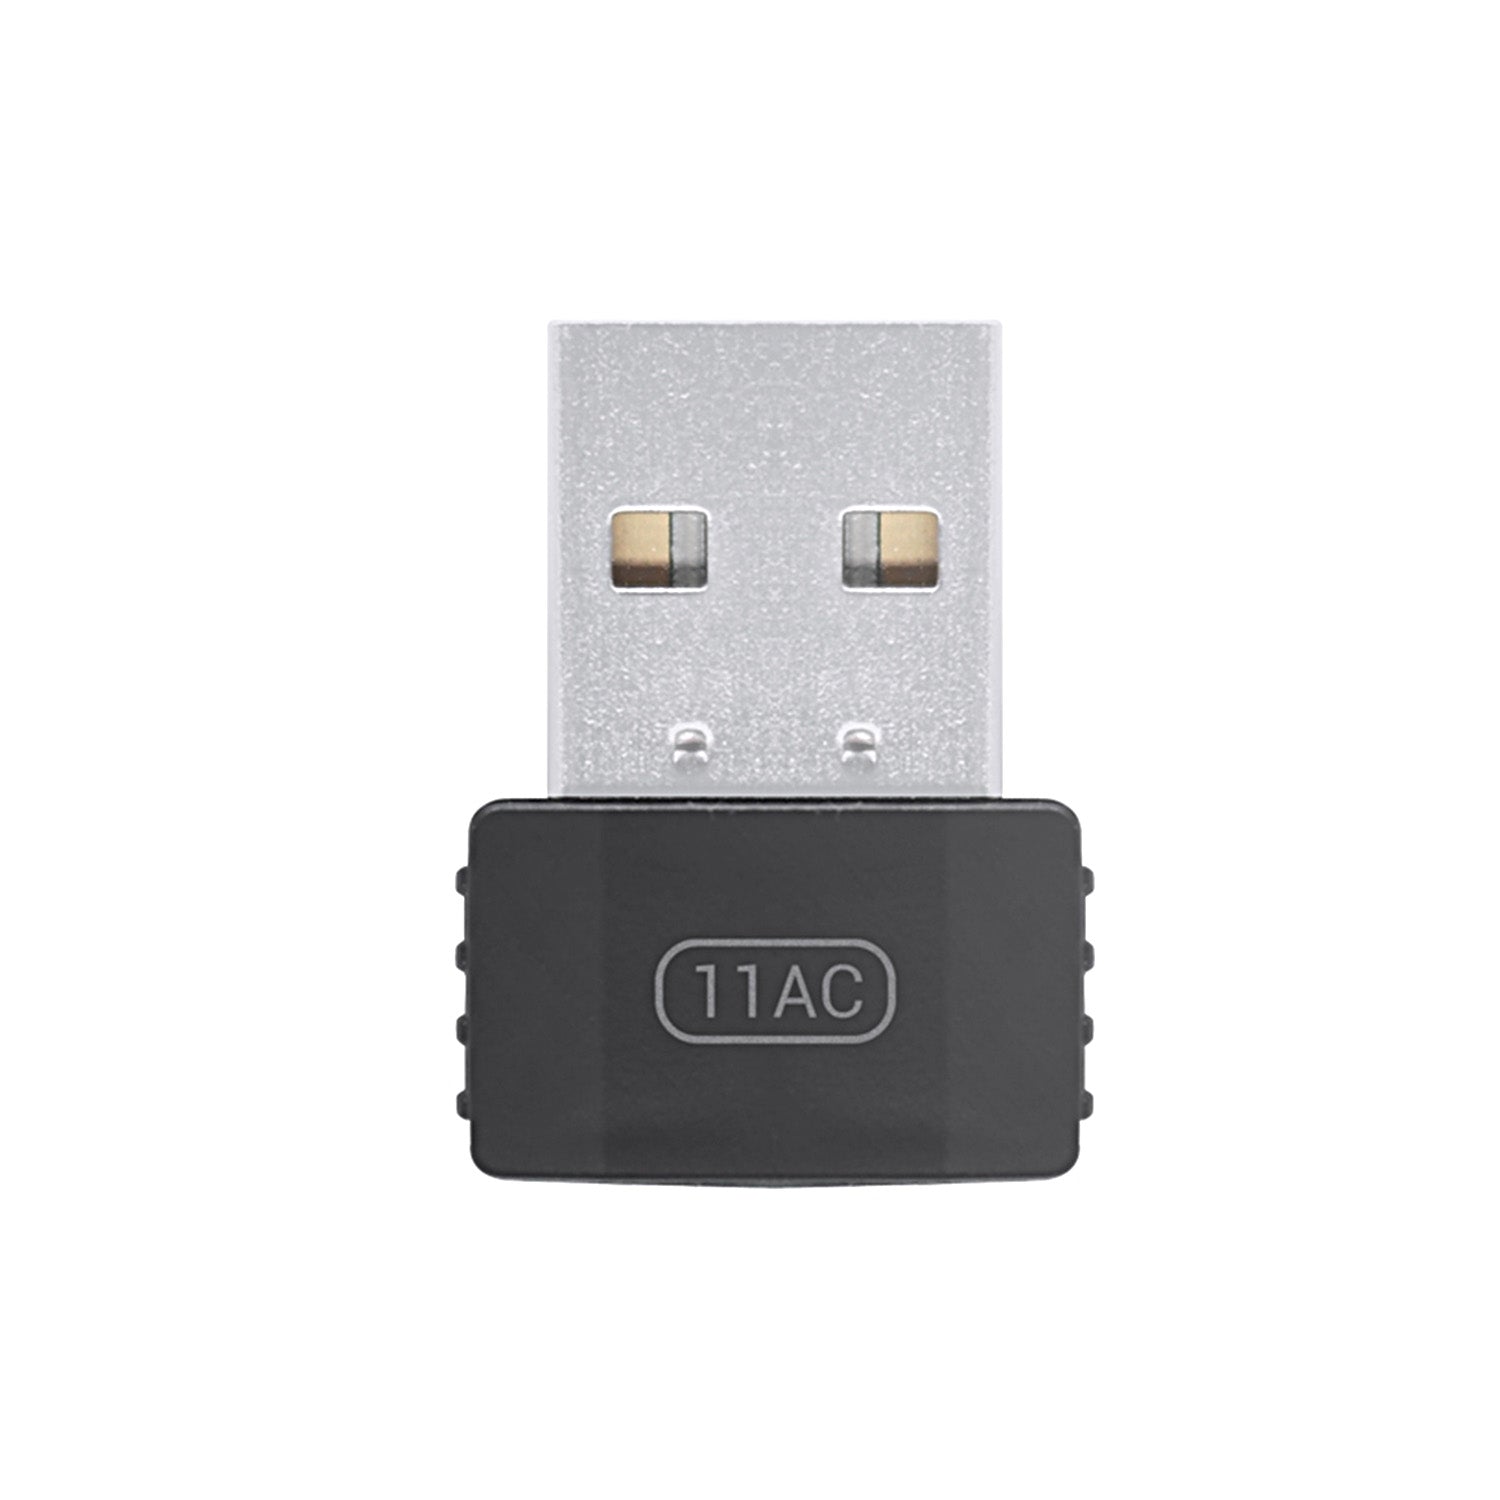 Small Size USB Wi-Fi